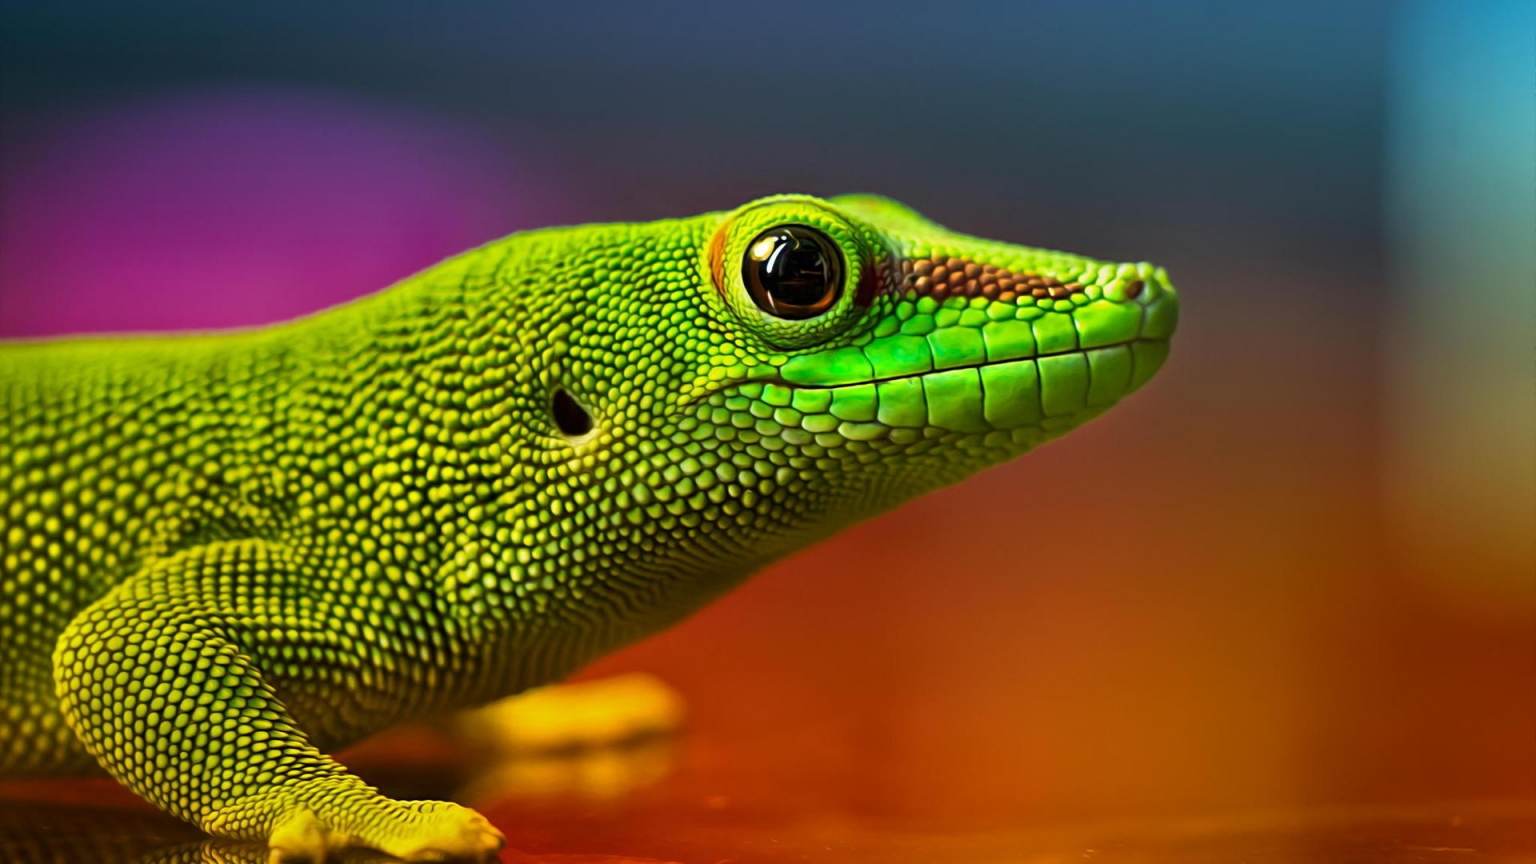 Green Lizard for 1536 x 864 HDTV resolution